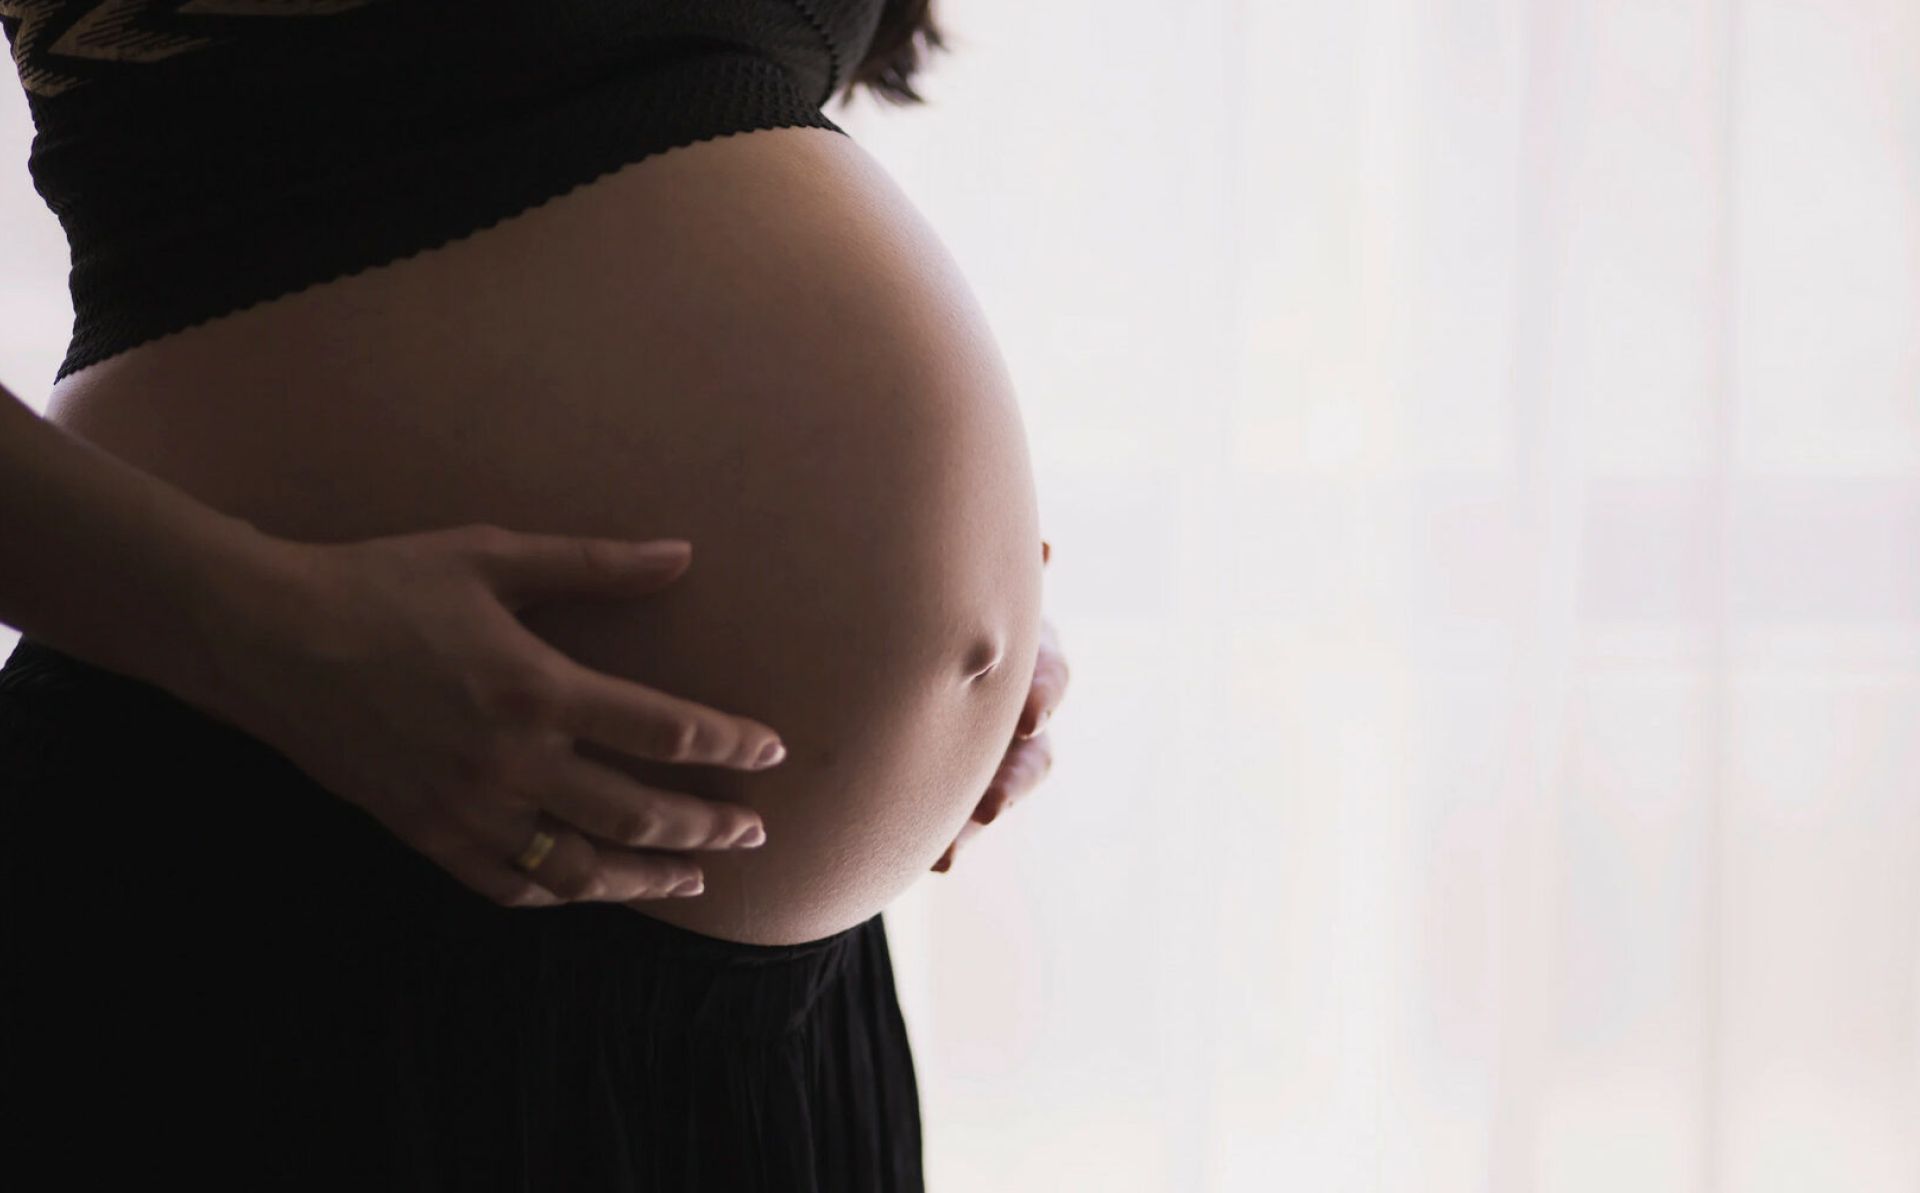 Primul studiu privind violența obstetrică și ginecologică în Republica Moldova